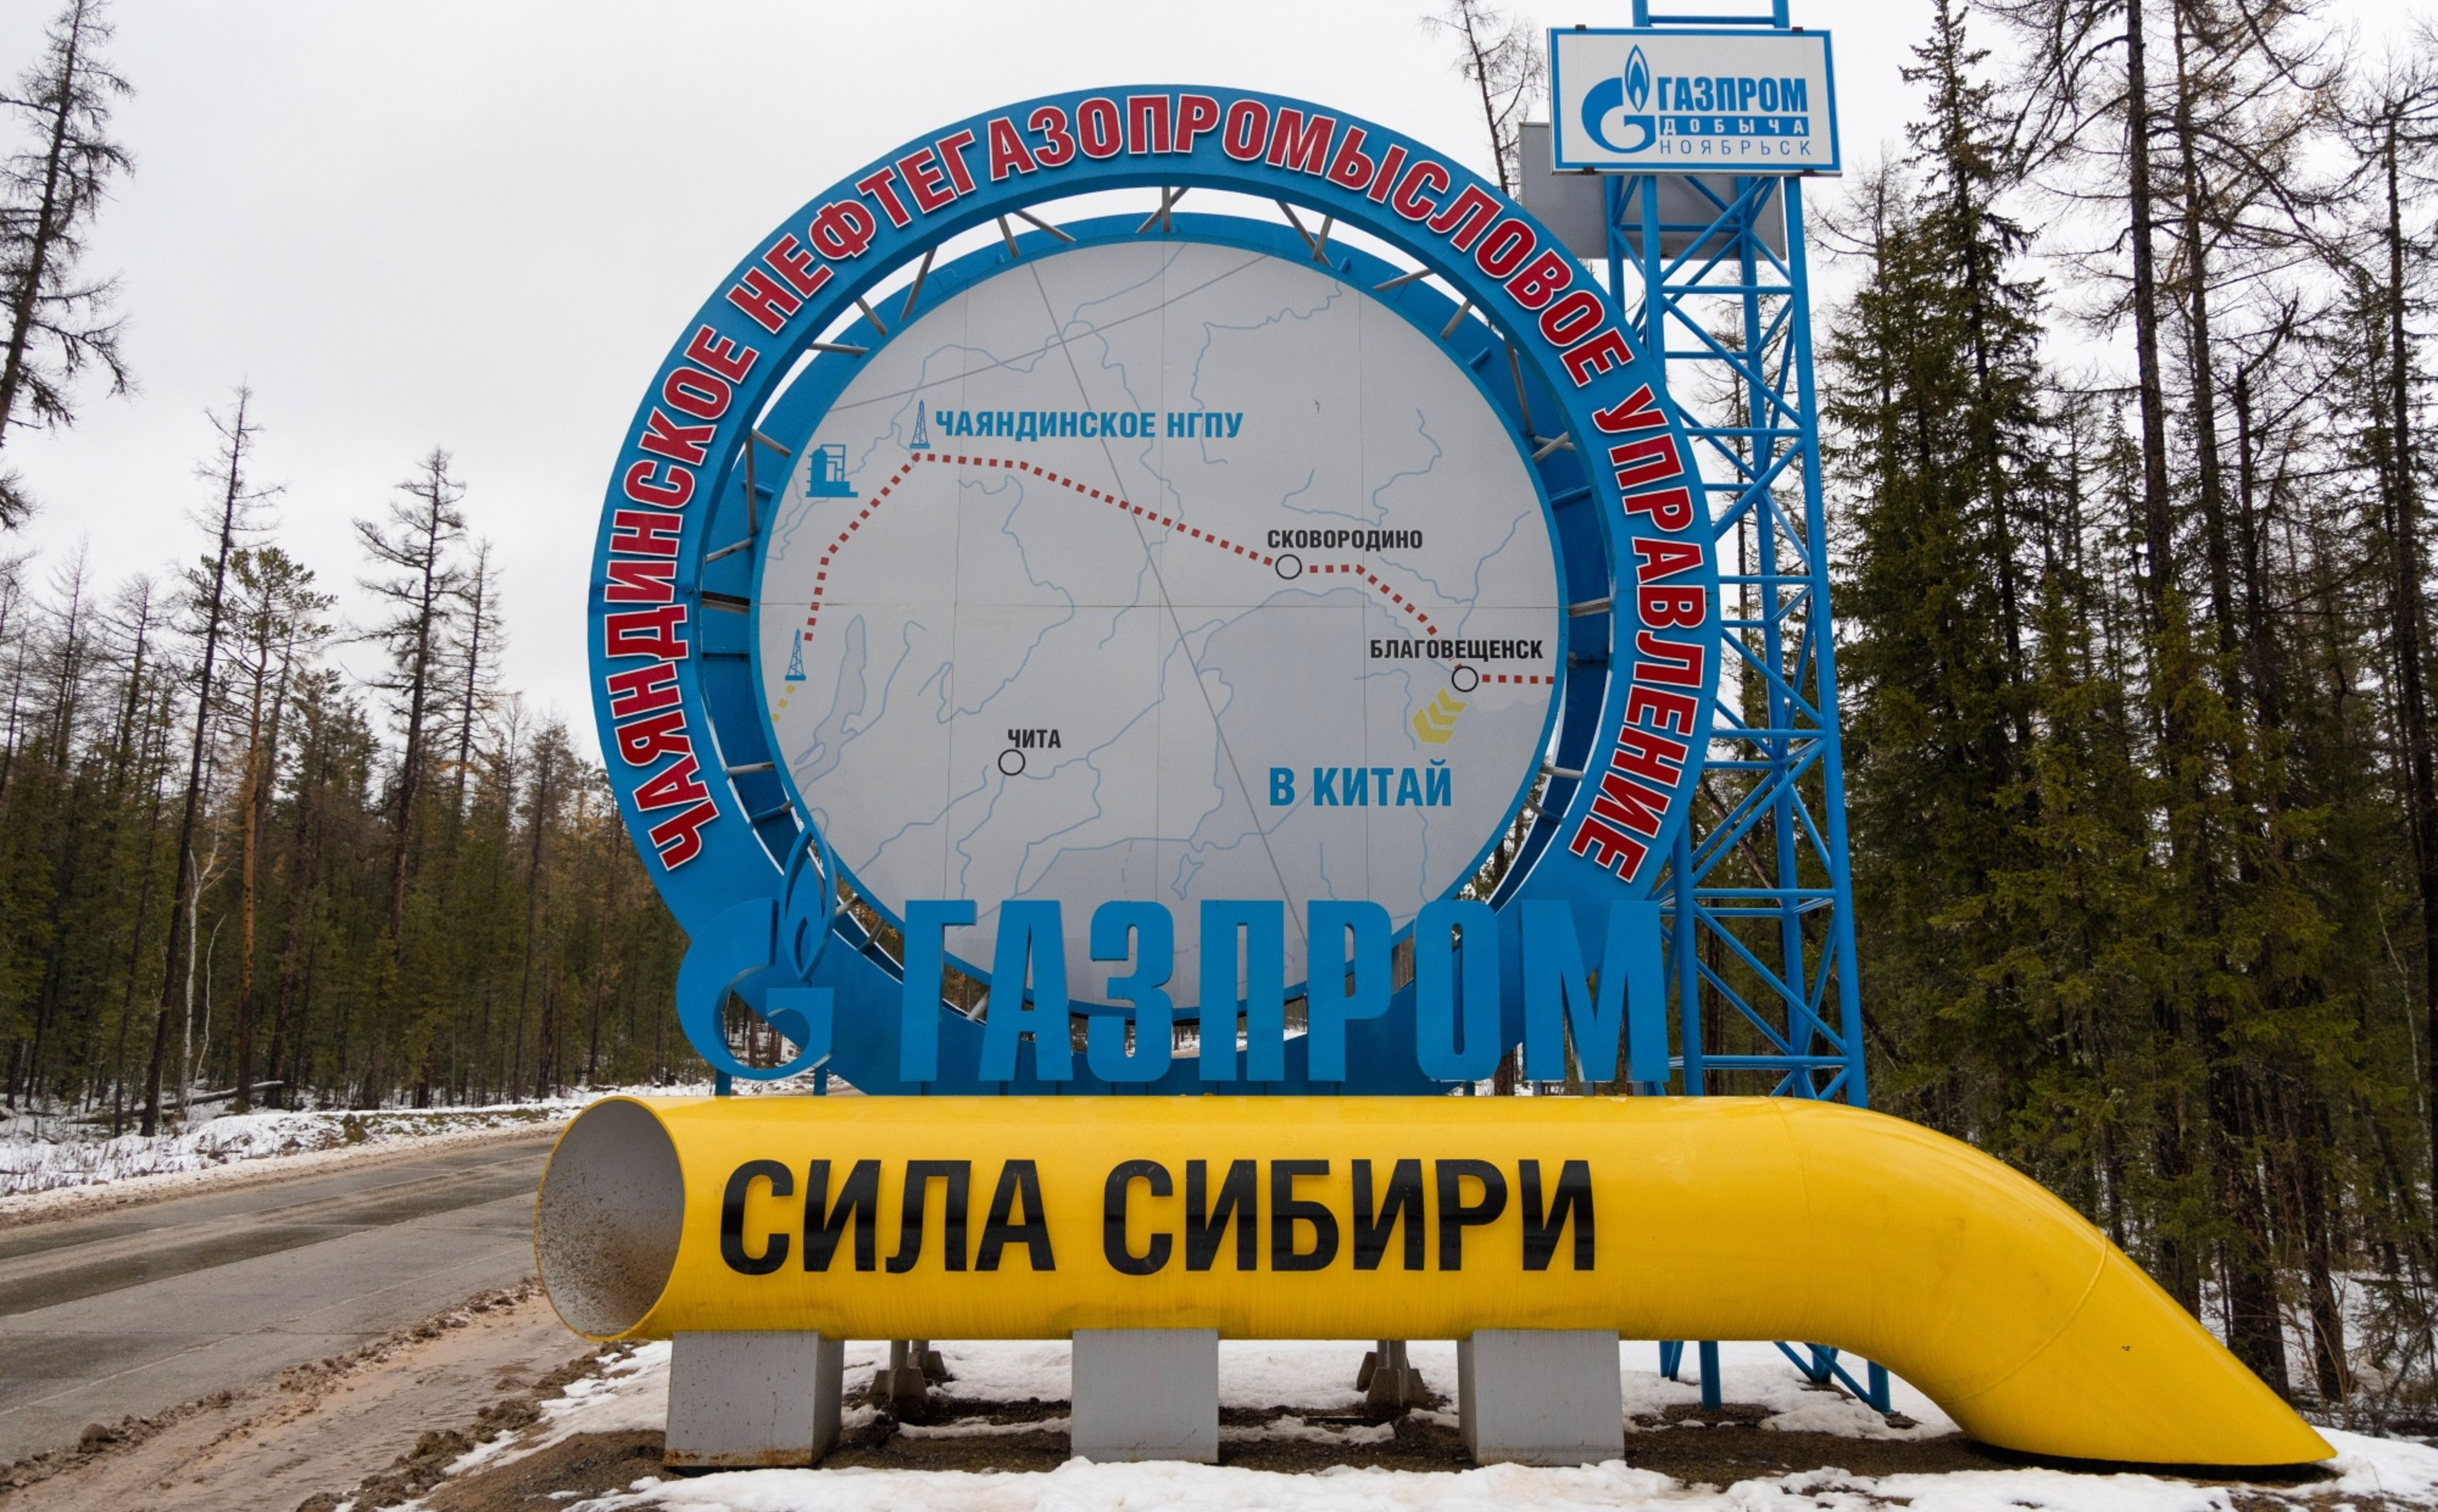 Gazprom szoruje po dnie. Pierwszy rok zamknięty stratą